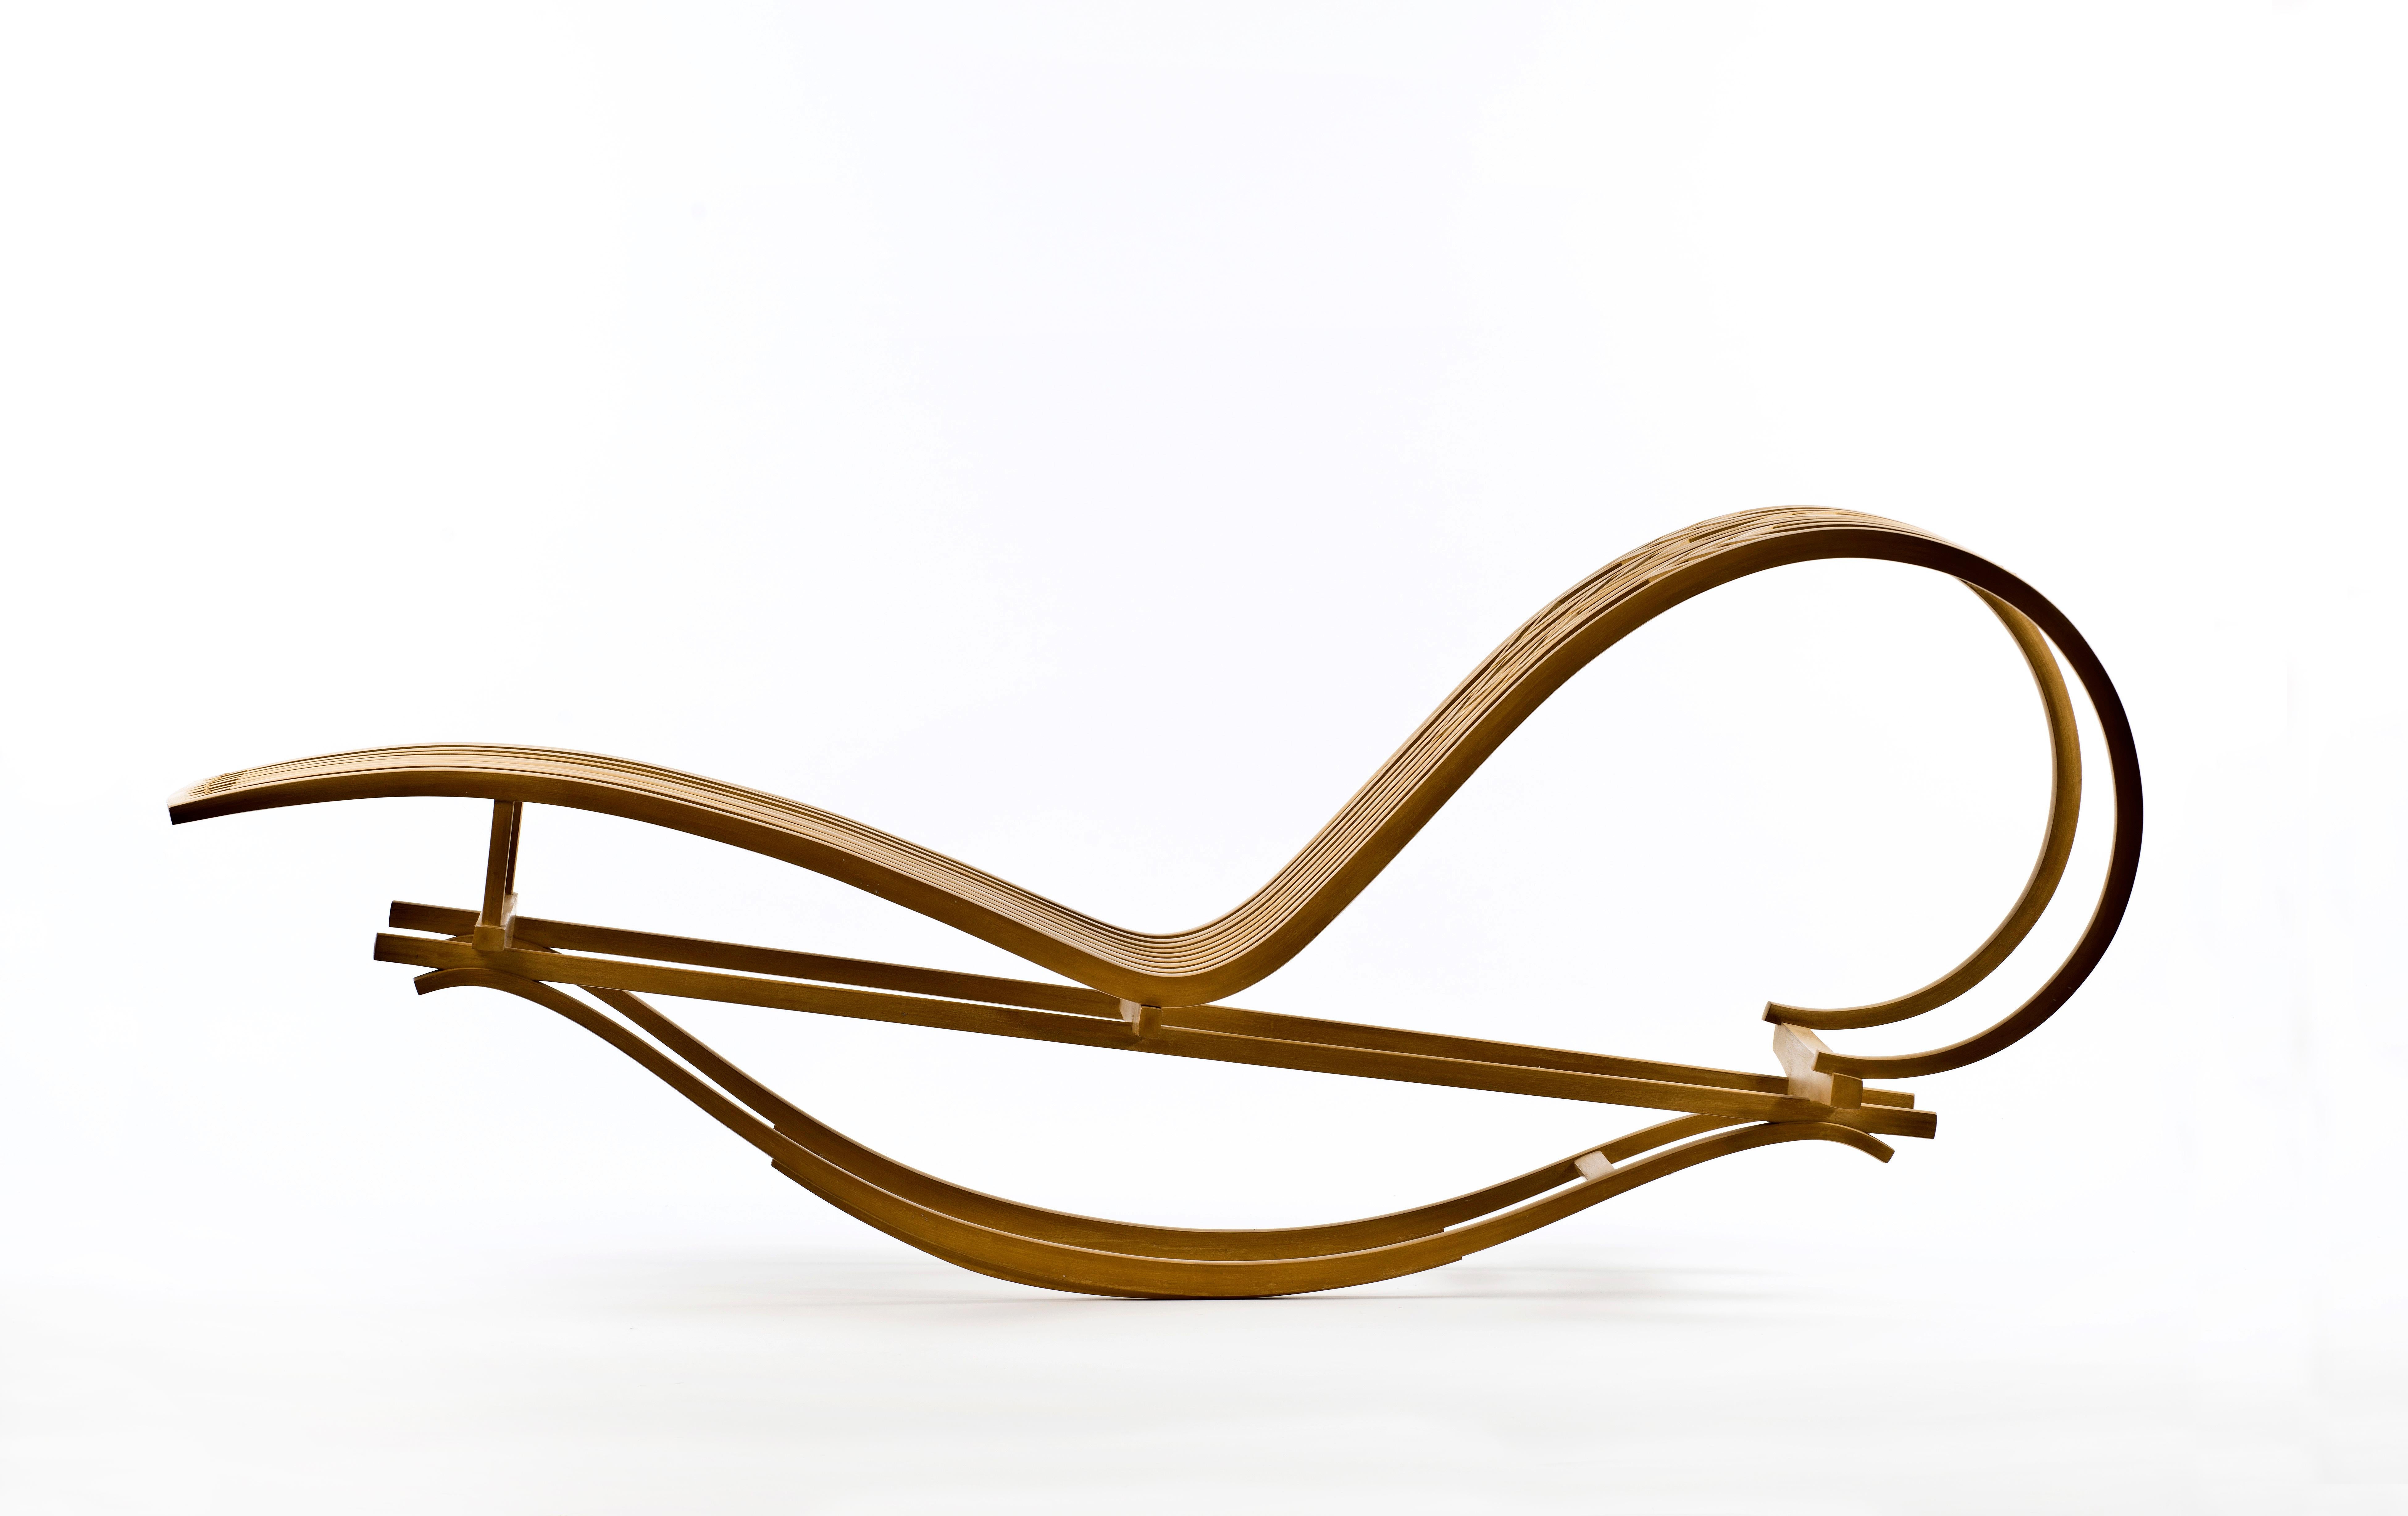 Michael Hurwitz
Chaise longue à bascule en bois courbé, 1990
Acajou
34.25 x 83 x 24 in

Michael Hurwitz fabrique des meubles d'atelier depuis qu'il a obtenu un BFA du programme d'artisanat de l'université de Boston en 1979. Il a dirigé le